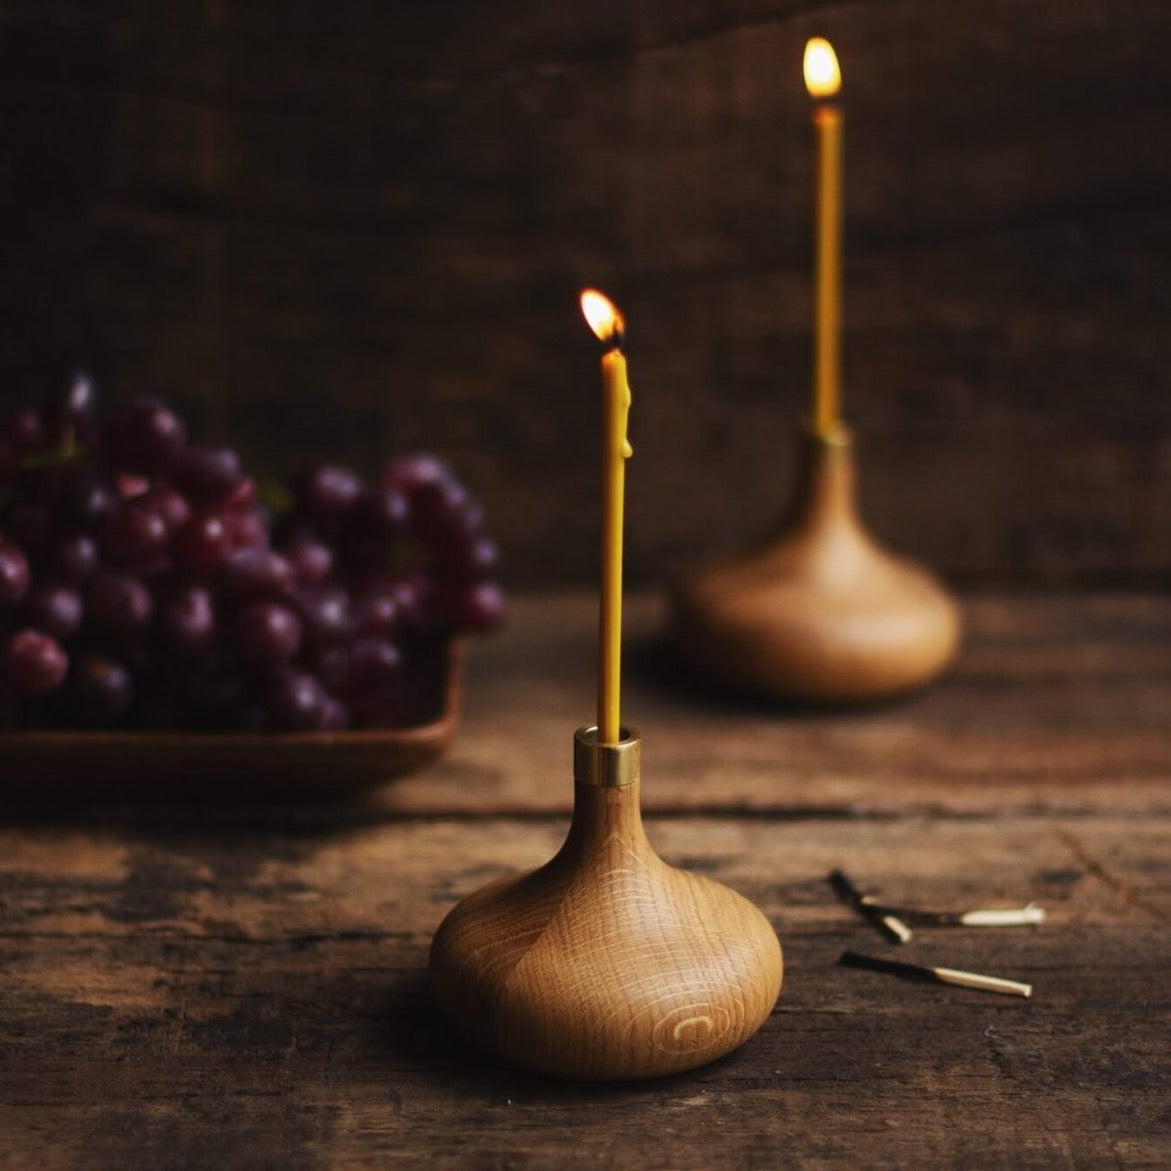 Zwei Kerzenhalter von Ovo Things mit brennenden Ovo Slim Kerzen auf Holztisch stehend im Hintergrund rote Weintrauben